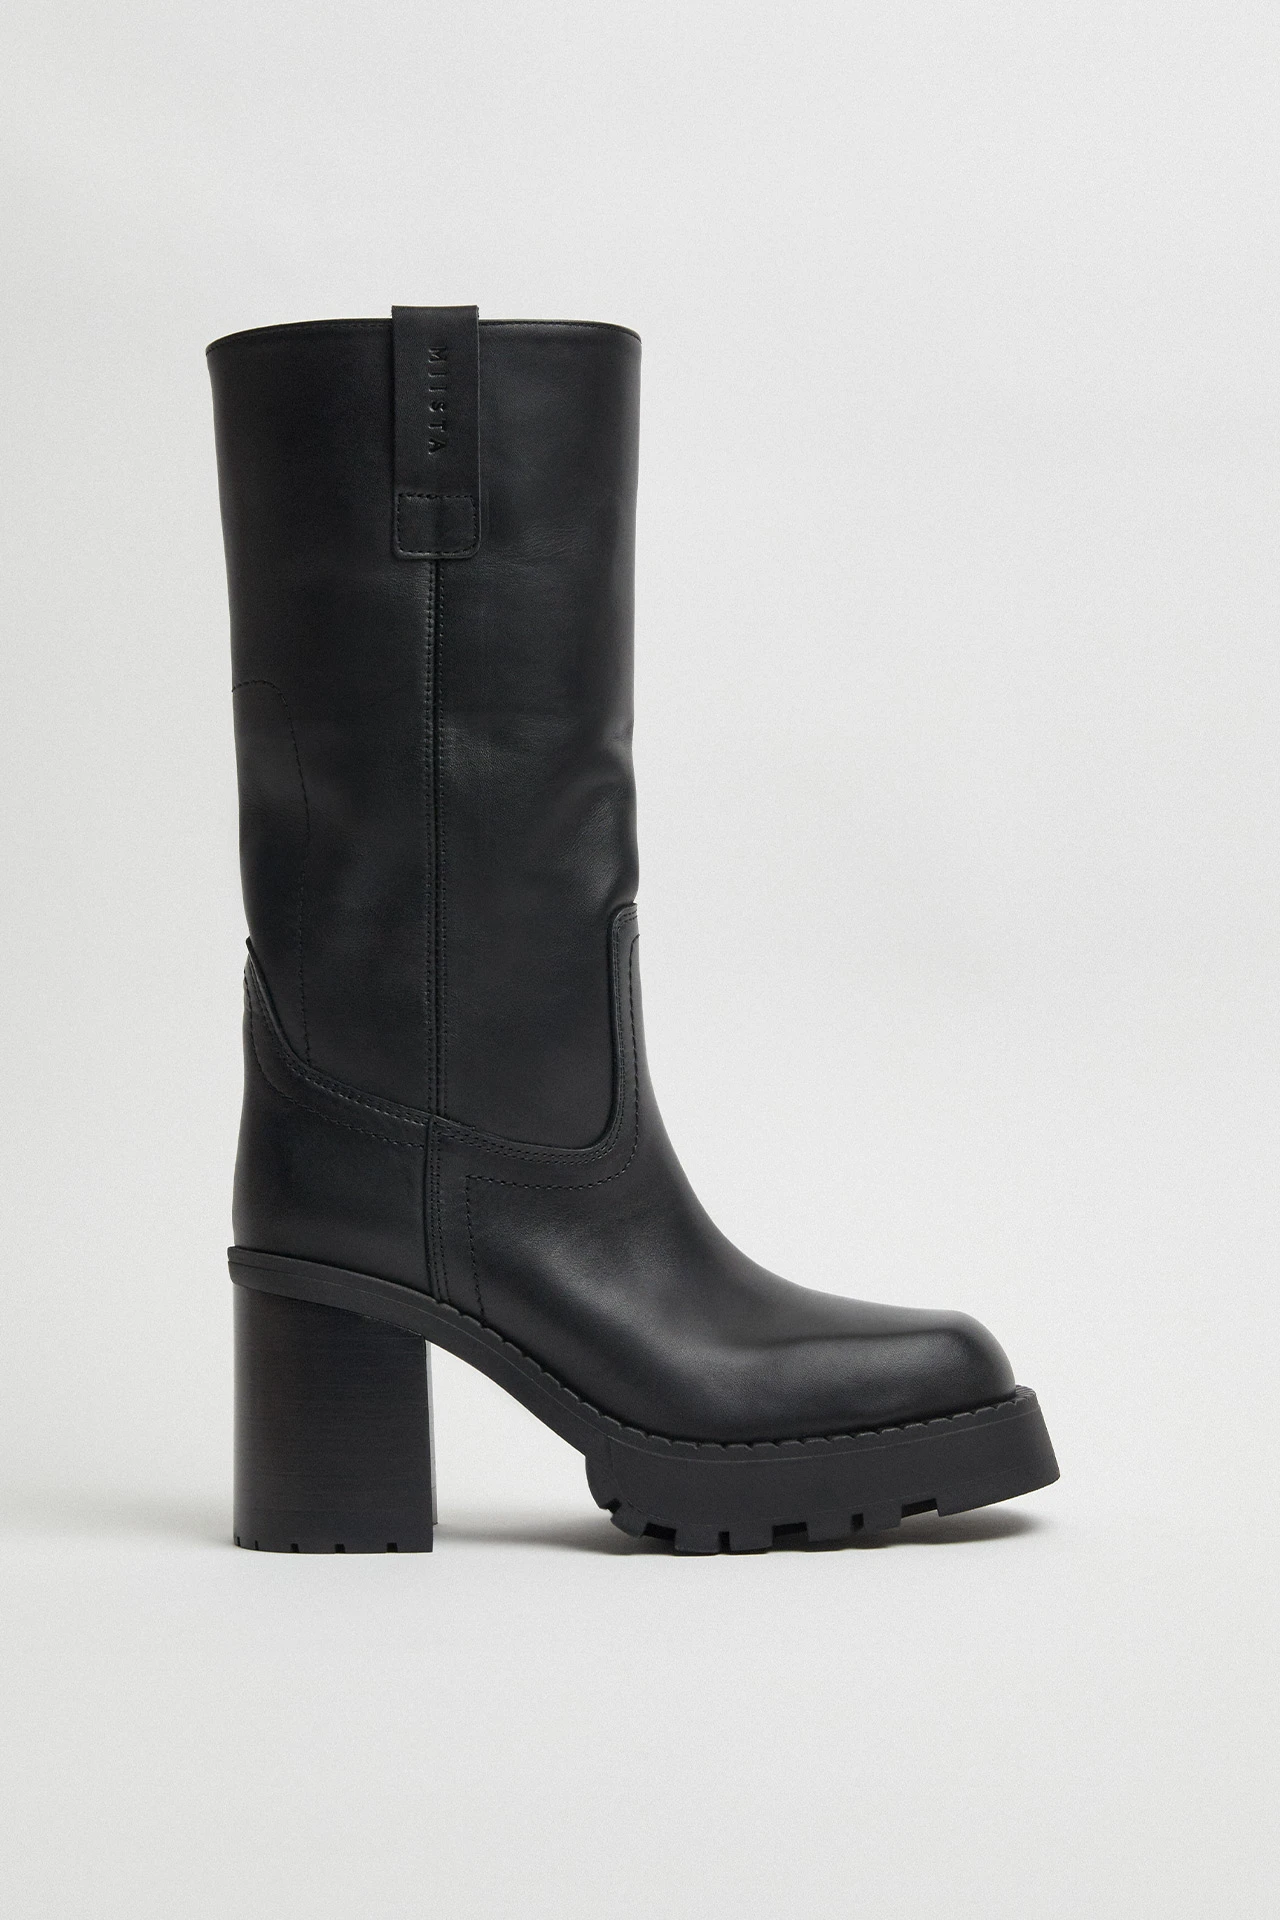 E8-dionira-black-tall-boots-02